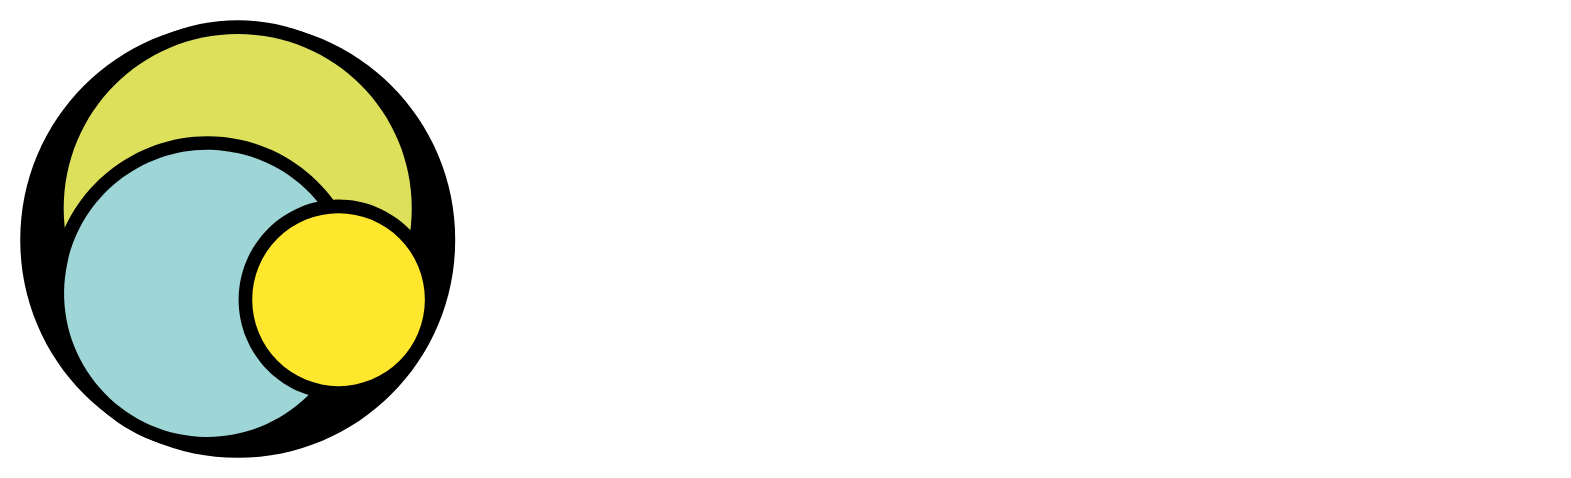 PagSeguro Logo groß für dunkle Hintergründe (transparentes PNG)